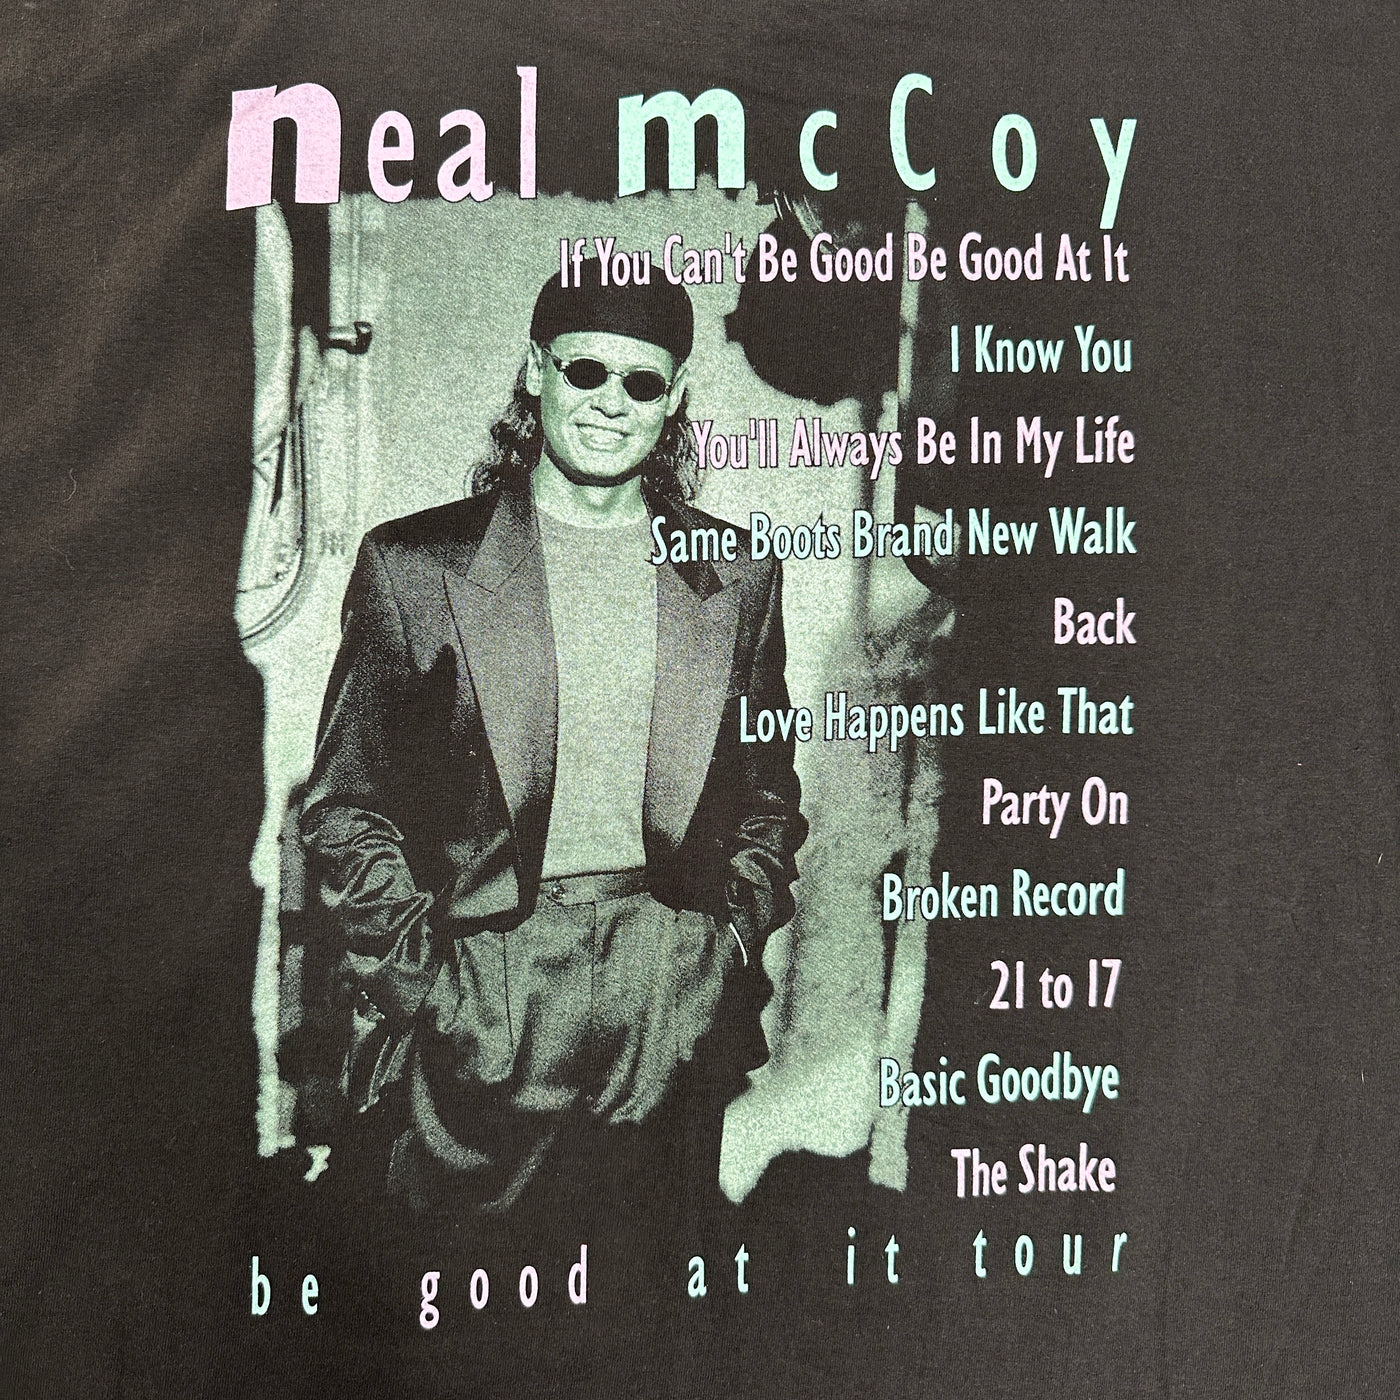 90's Neal McCoy Black Music T-shirt sz 2XL